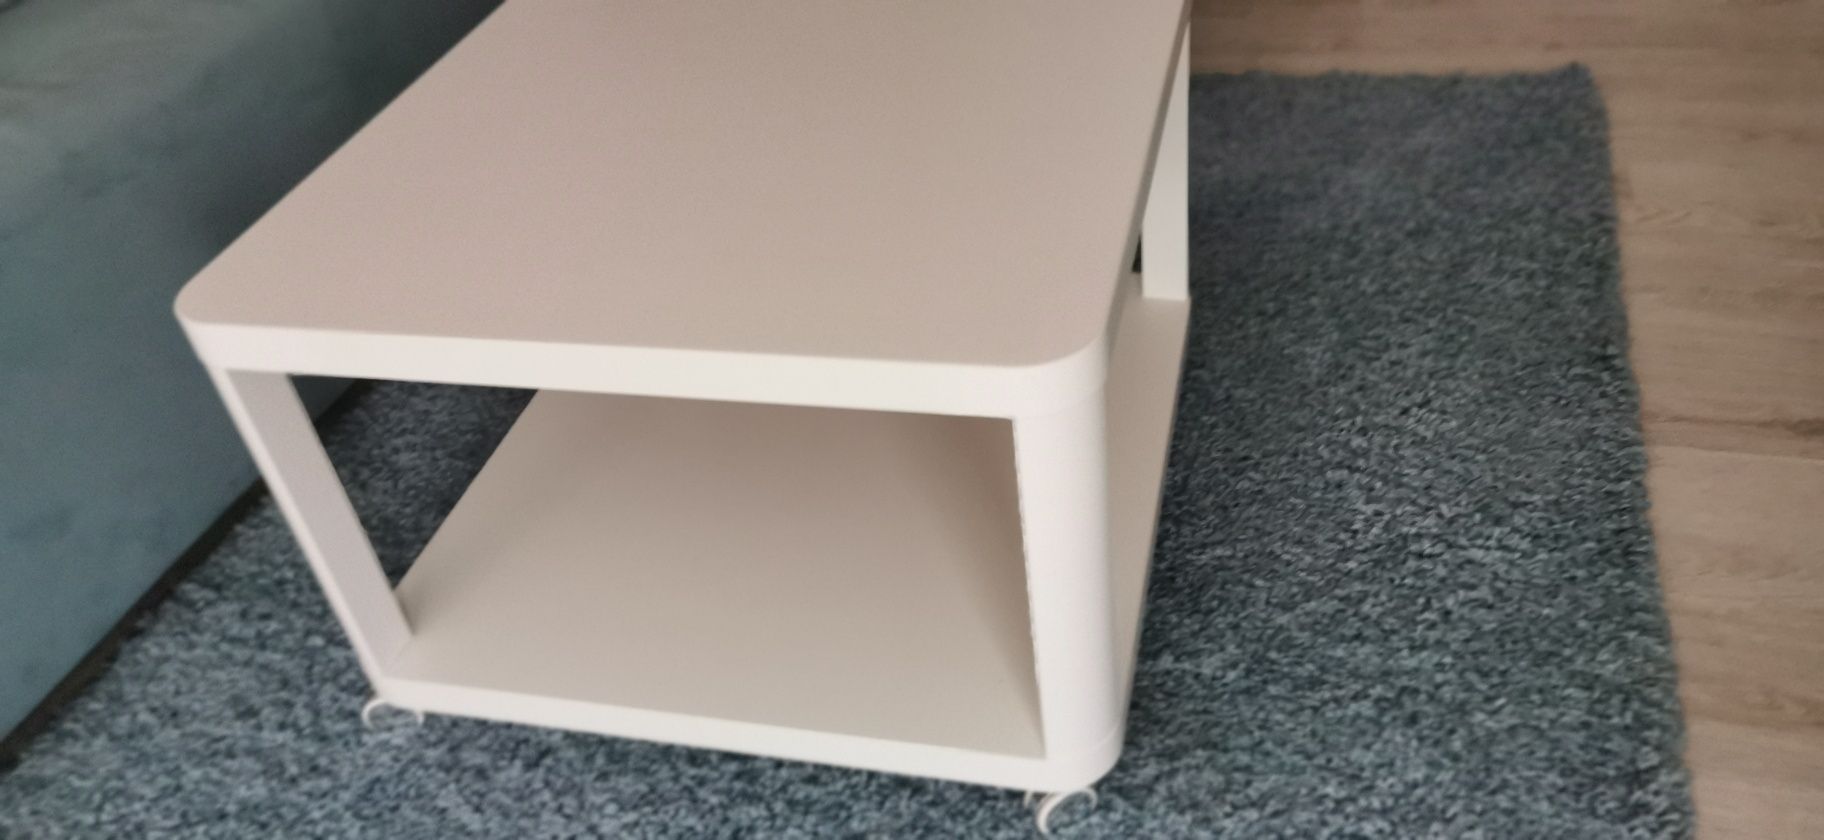 Stolik biały na kółkach Ikea kawowy 64x64 cm